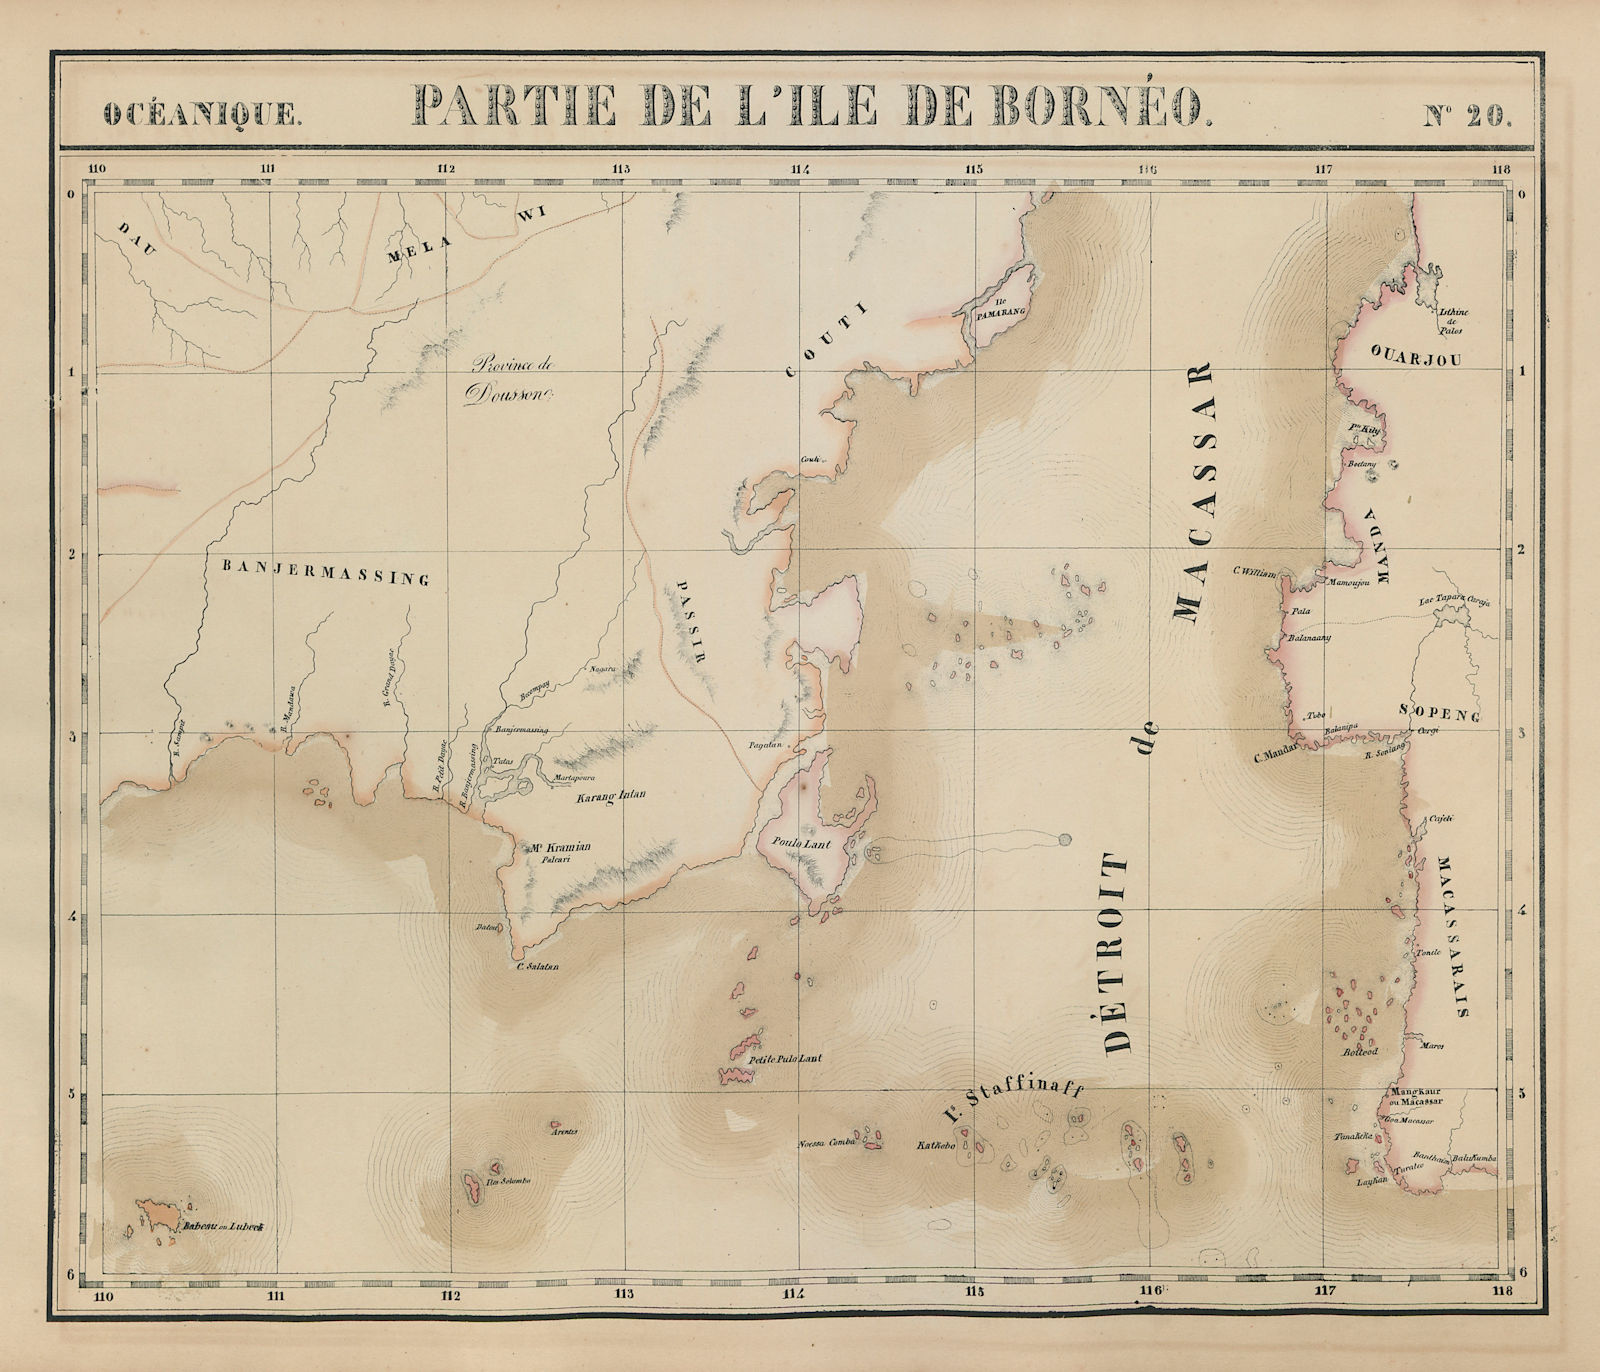 Océanique. Partie de l'ile de Bornéo #20. Sulawesi. VANDERMAELEN 1827 old map